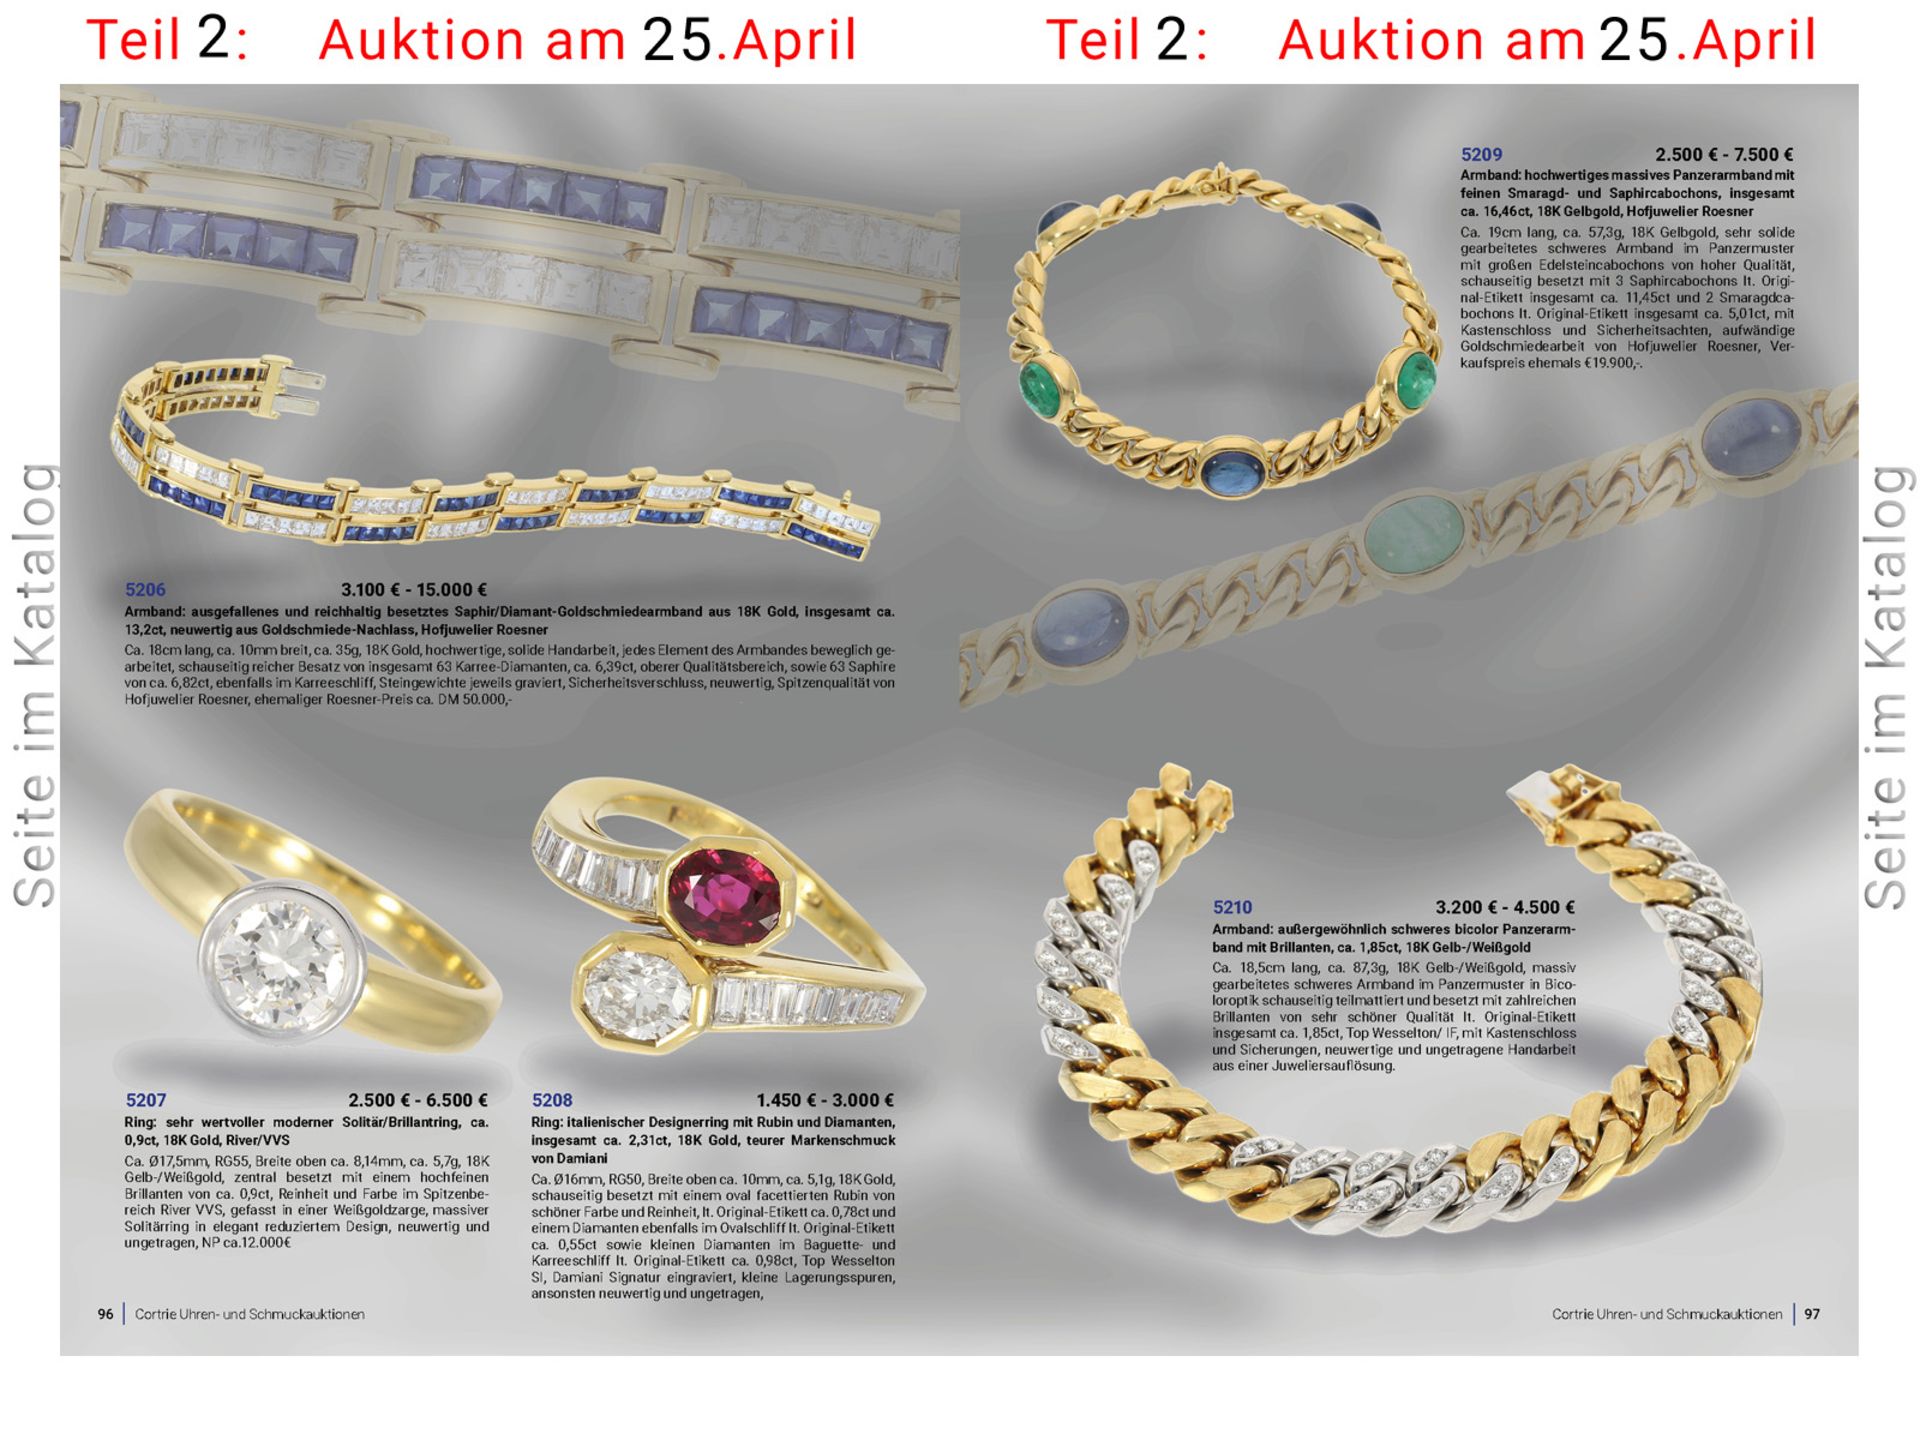 Ring: italienischer Designerring mit Rubin und Diamanten, insgesamt ca. 2,31ct, 18K Gold, teurer - Image 4 of 4